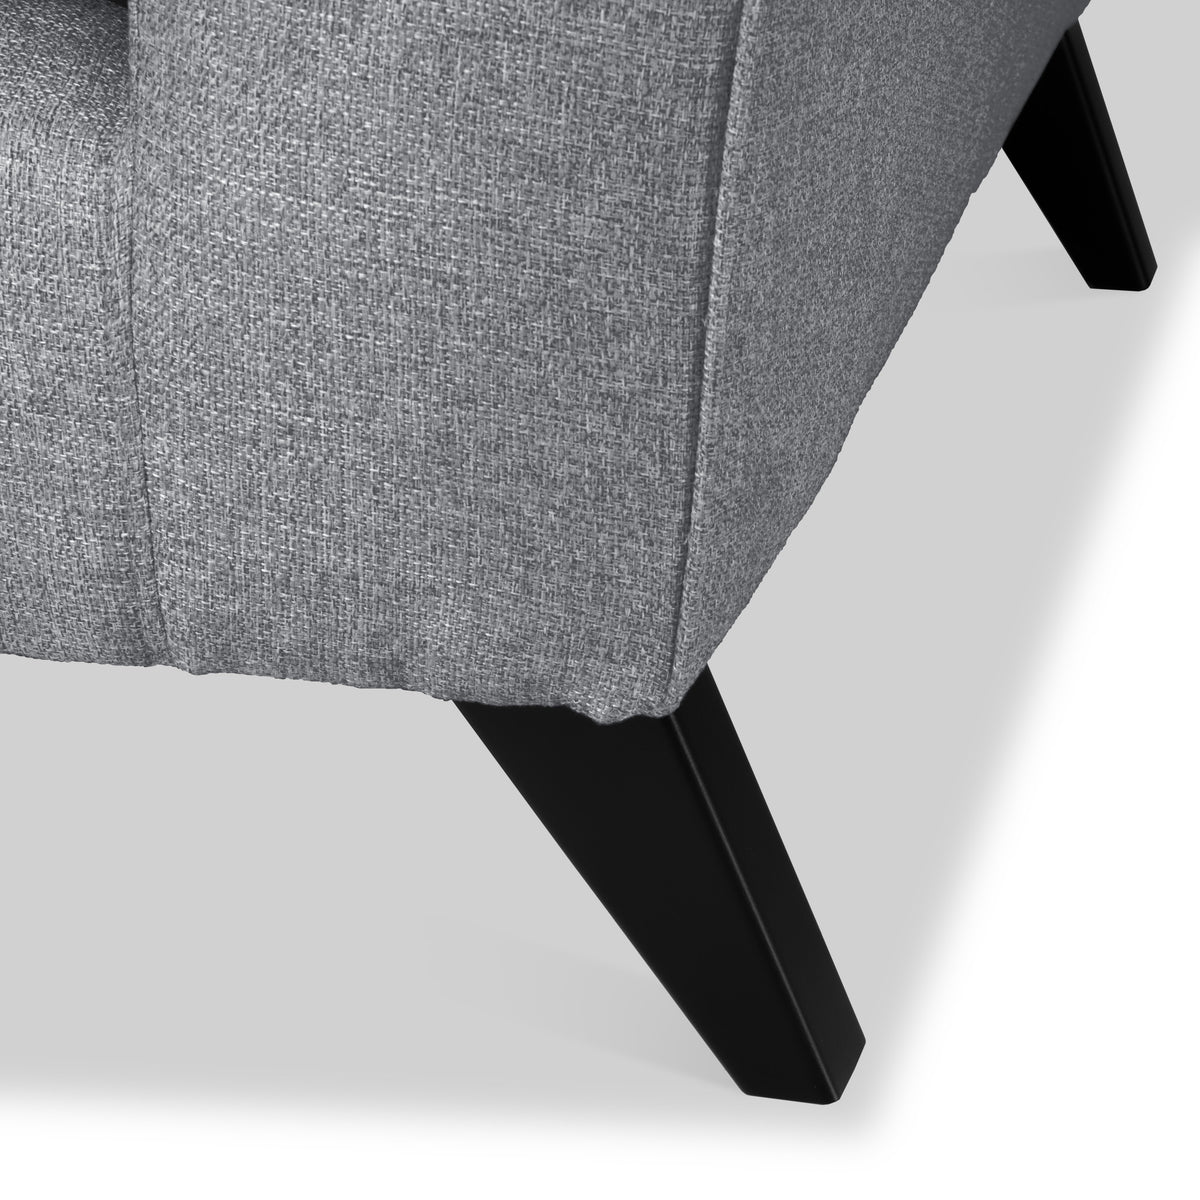 Geo Corner Sofa in Charcoal by Roseland Furniture